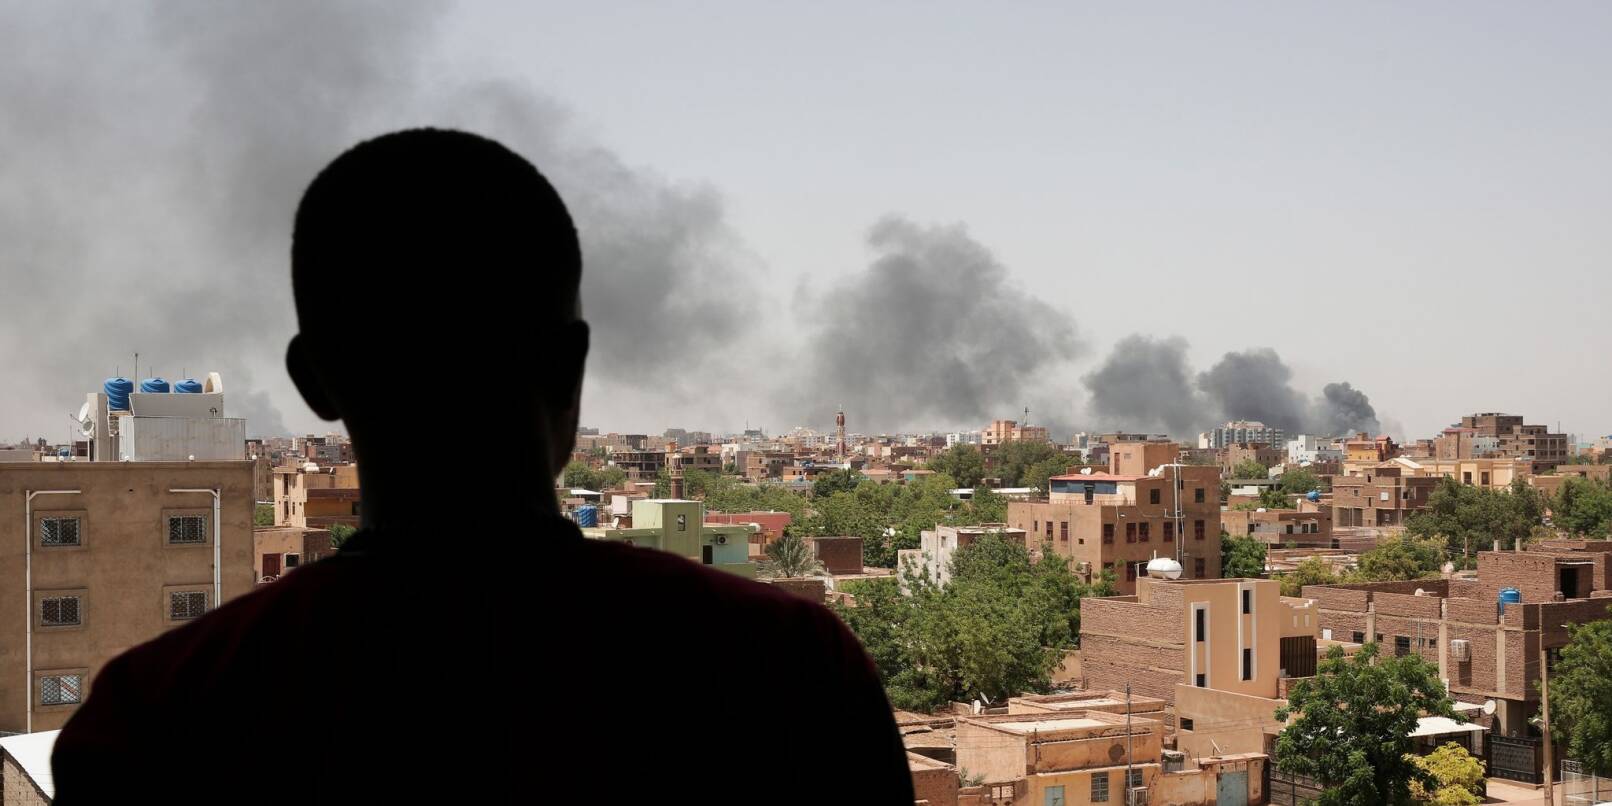 Ein Mann blickt auf die Stadt Khartum, wo infolge von Kämpfen schwarzer Rauch aufsteigt.